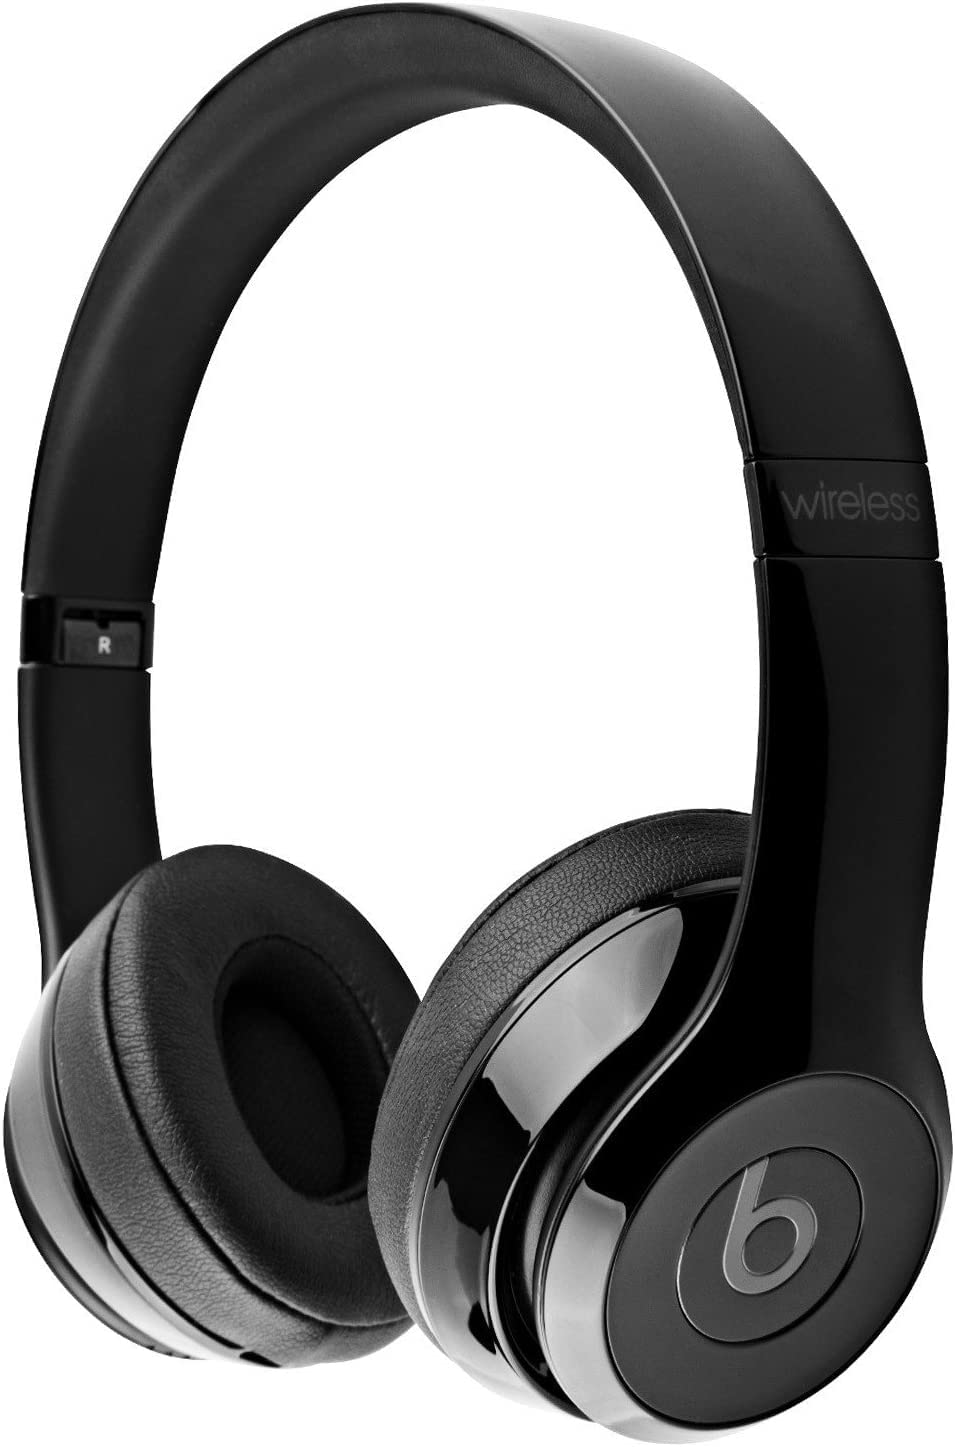 Beats Solo 3 Wireless On-Ear Headphones - Gloss Black (Renewed)